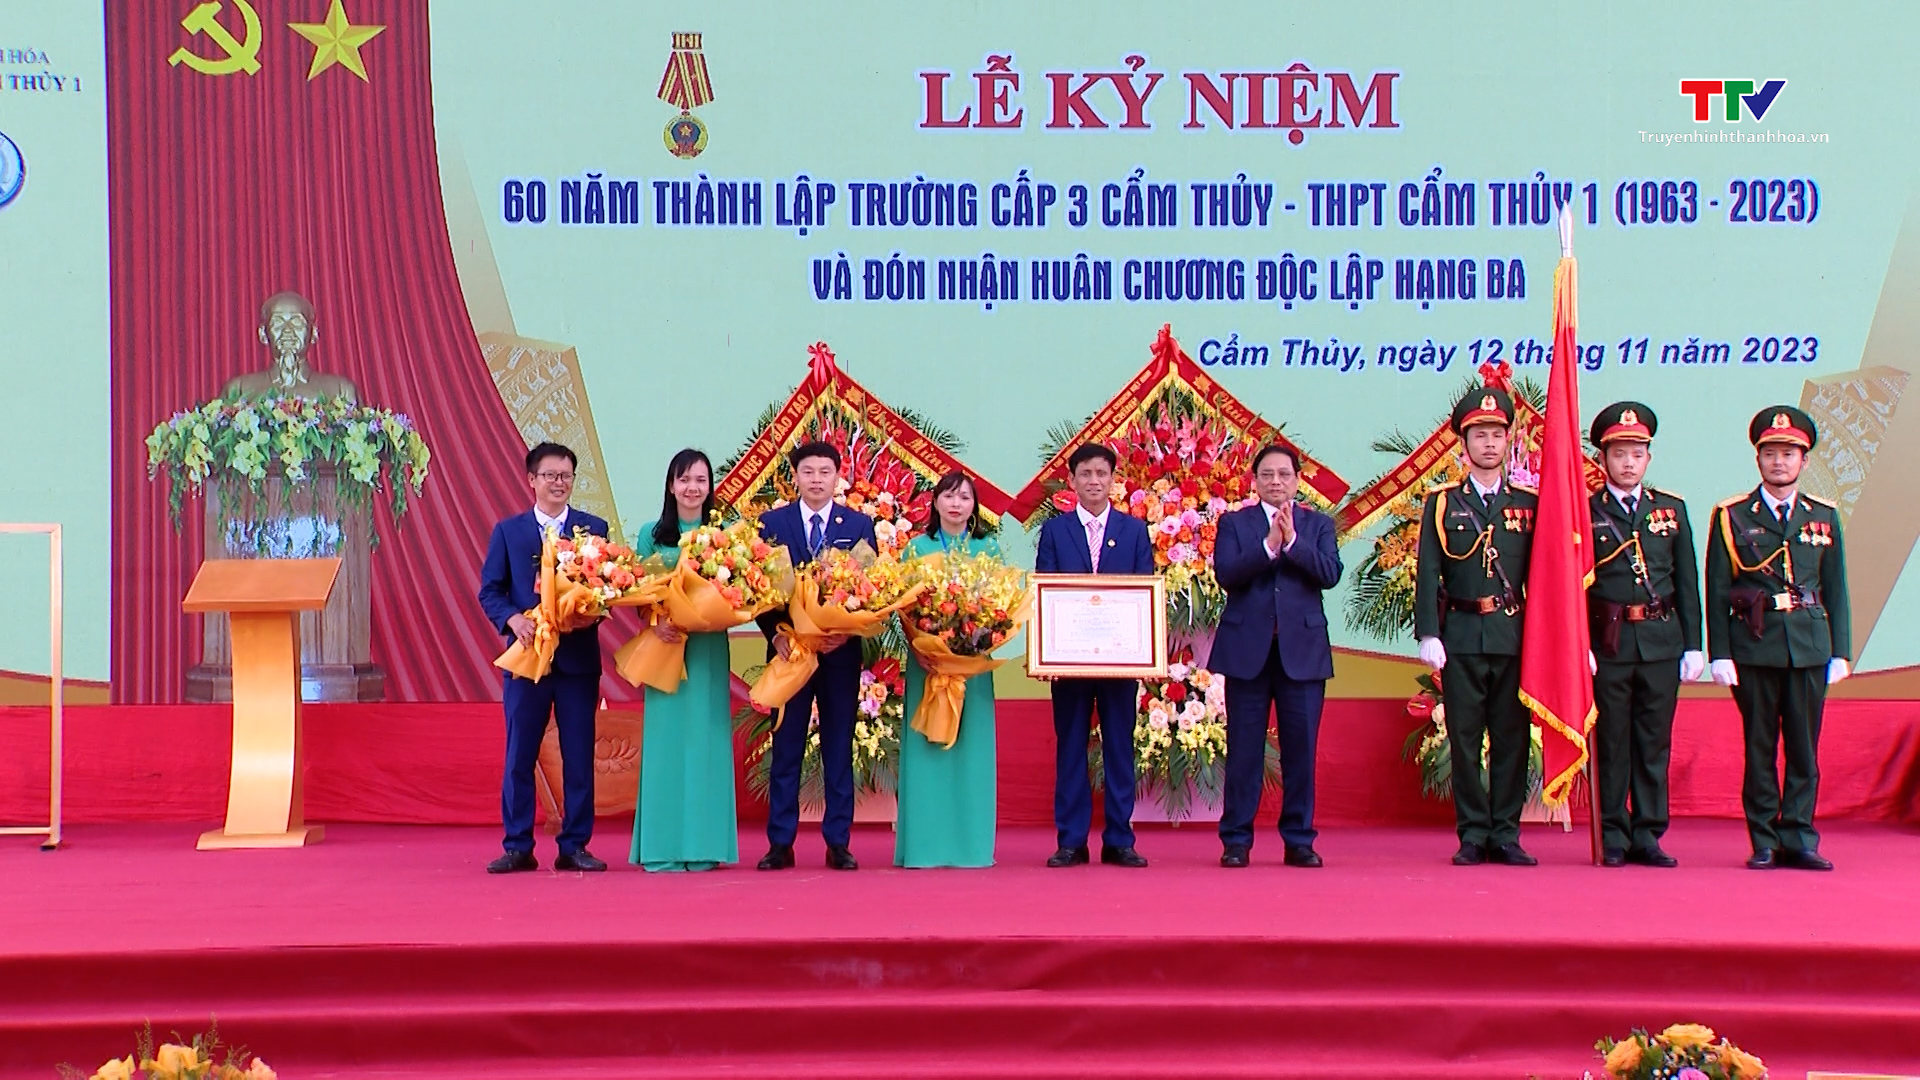 Thủ tướng Chính phủ Phạm Minh Chính dự lễ kỷ niệm 60 năm thành lập trường THPT Cẩm Thủy 1- Ảnh 3.